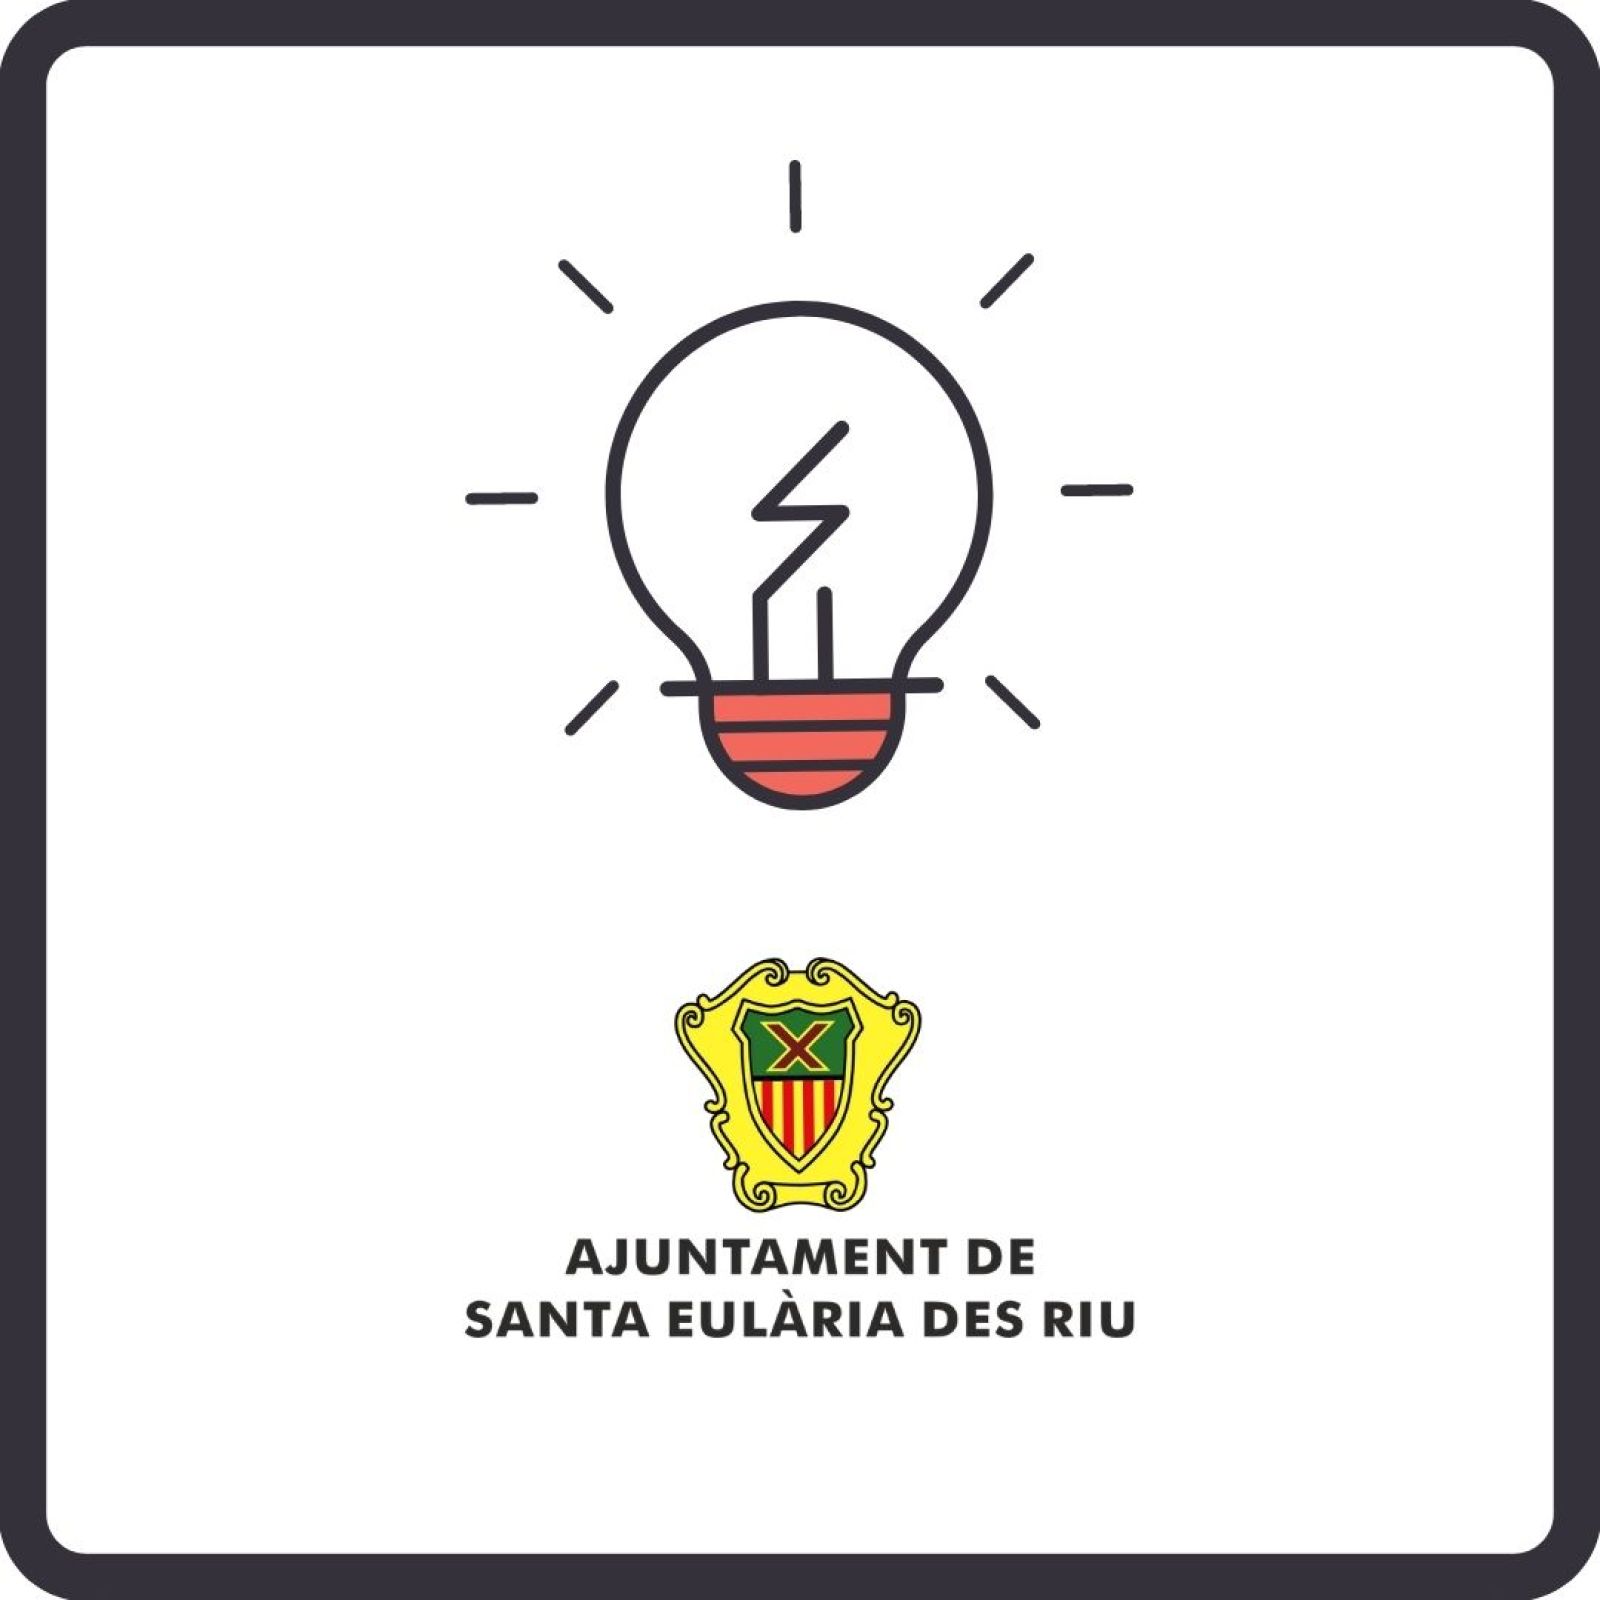 Corte temporal del suministro de energía eléctrica en diferentes zonas de Santa Eulària des Riu el día 28 de julio